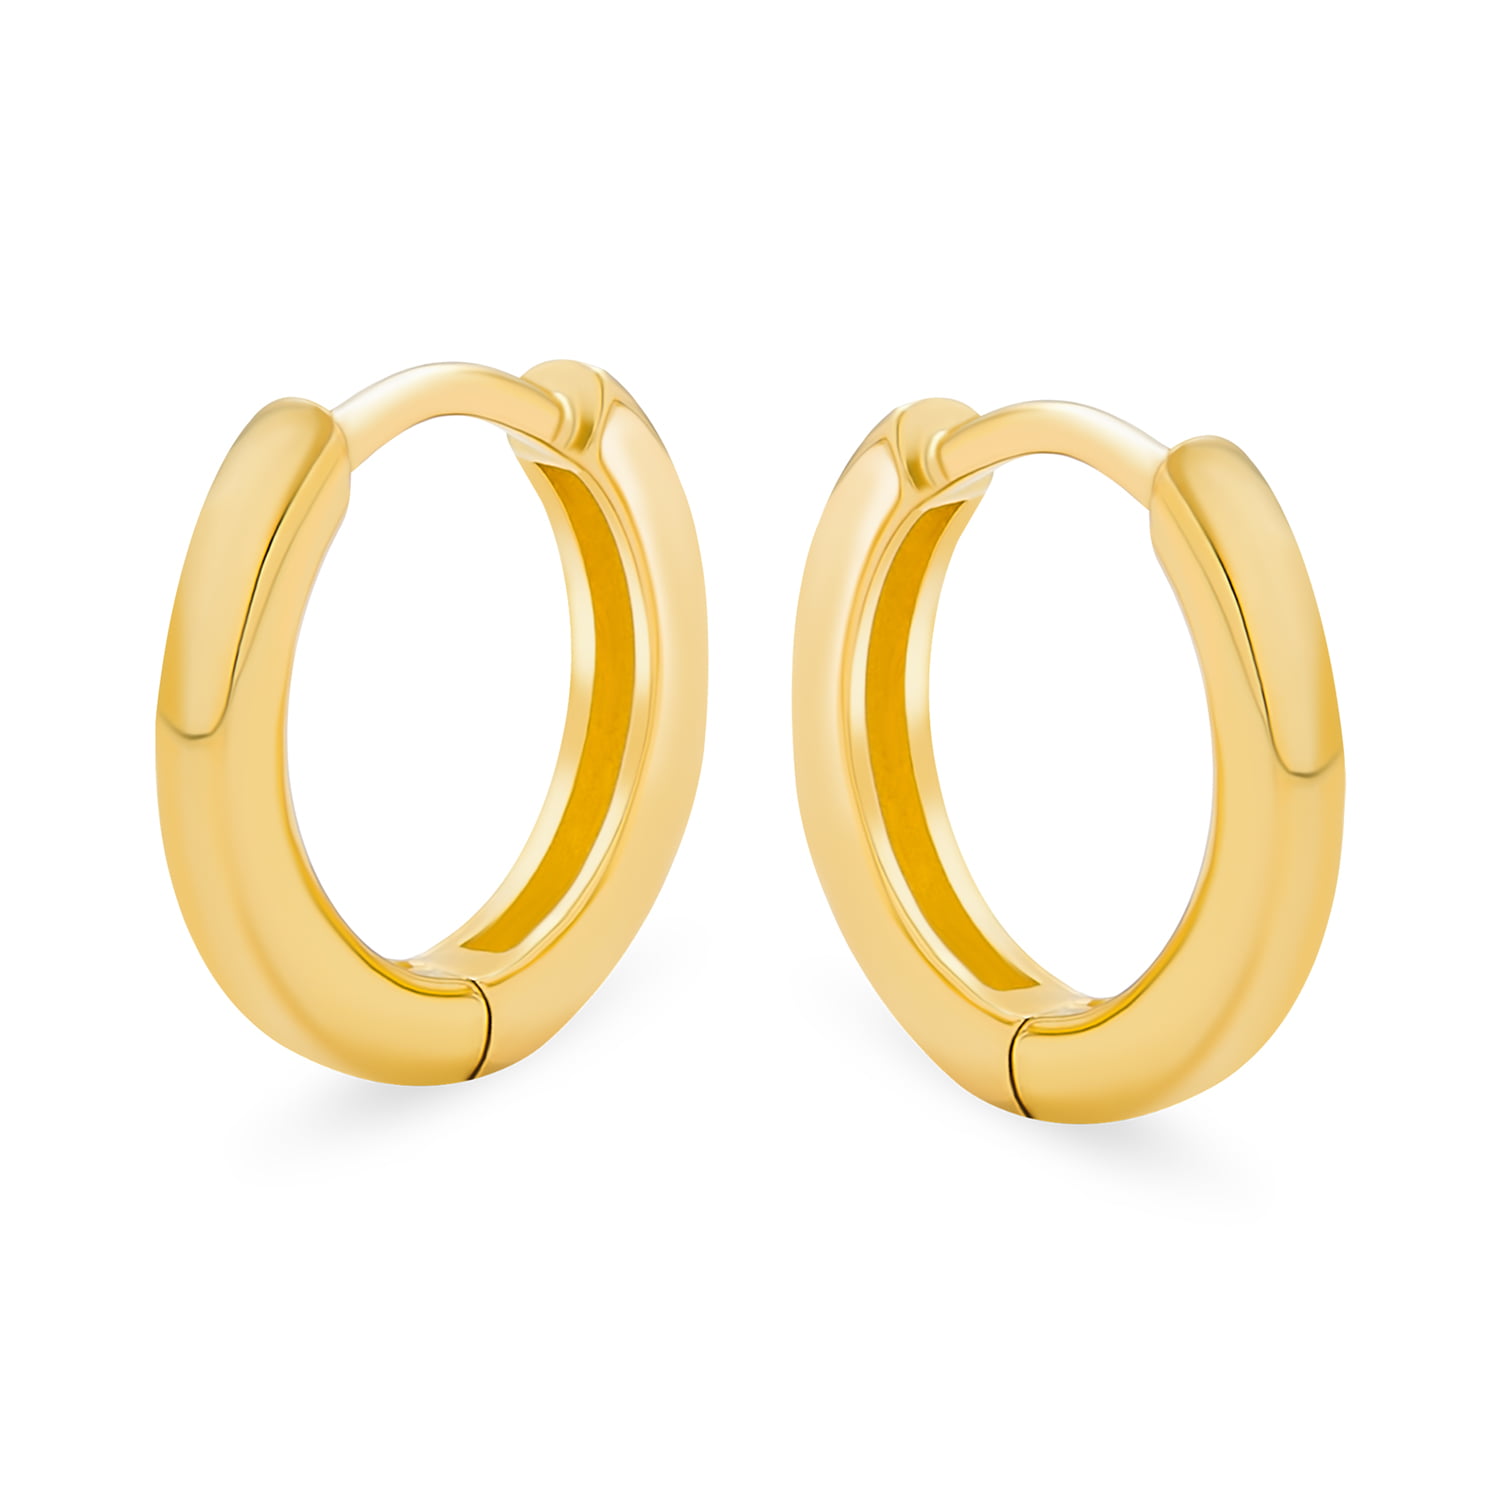 Mens Ladies 14k White Gold Polished Hinged Huggie Hoop Earrings 14mm x 3mm 